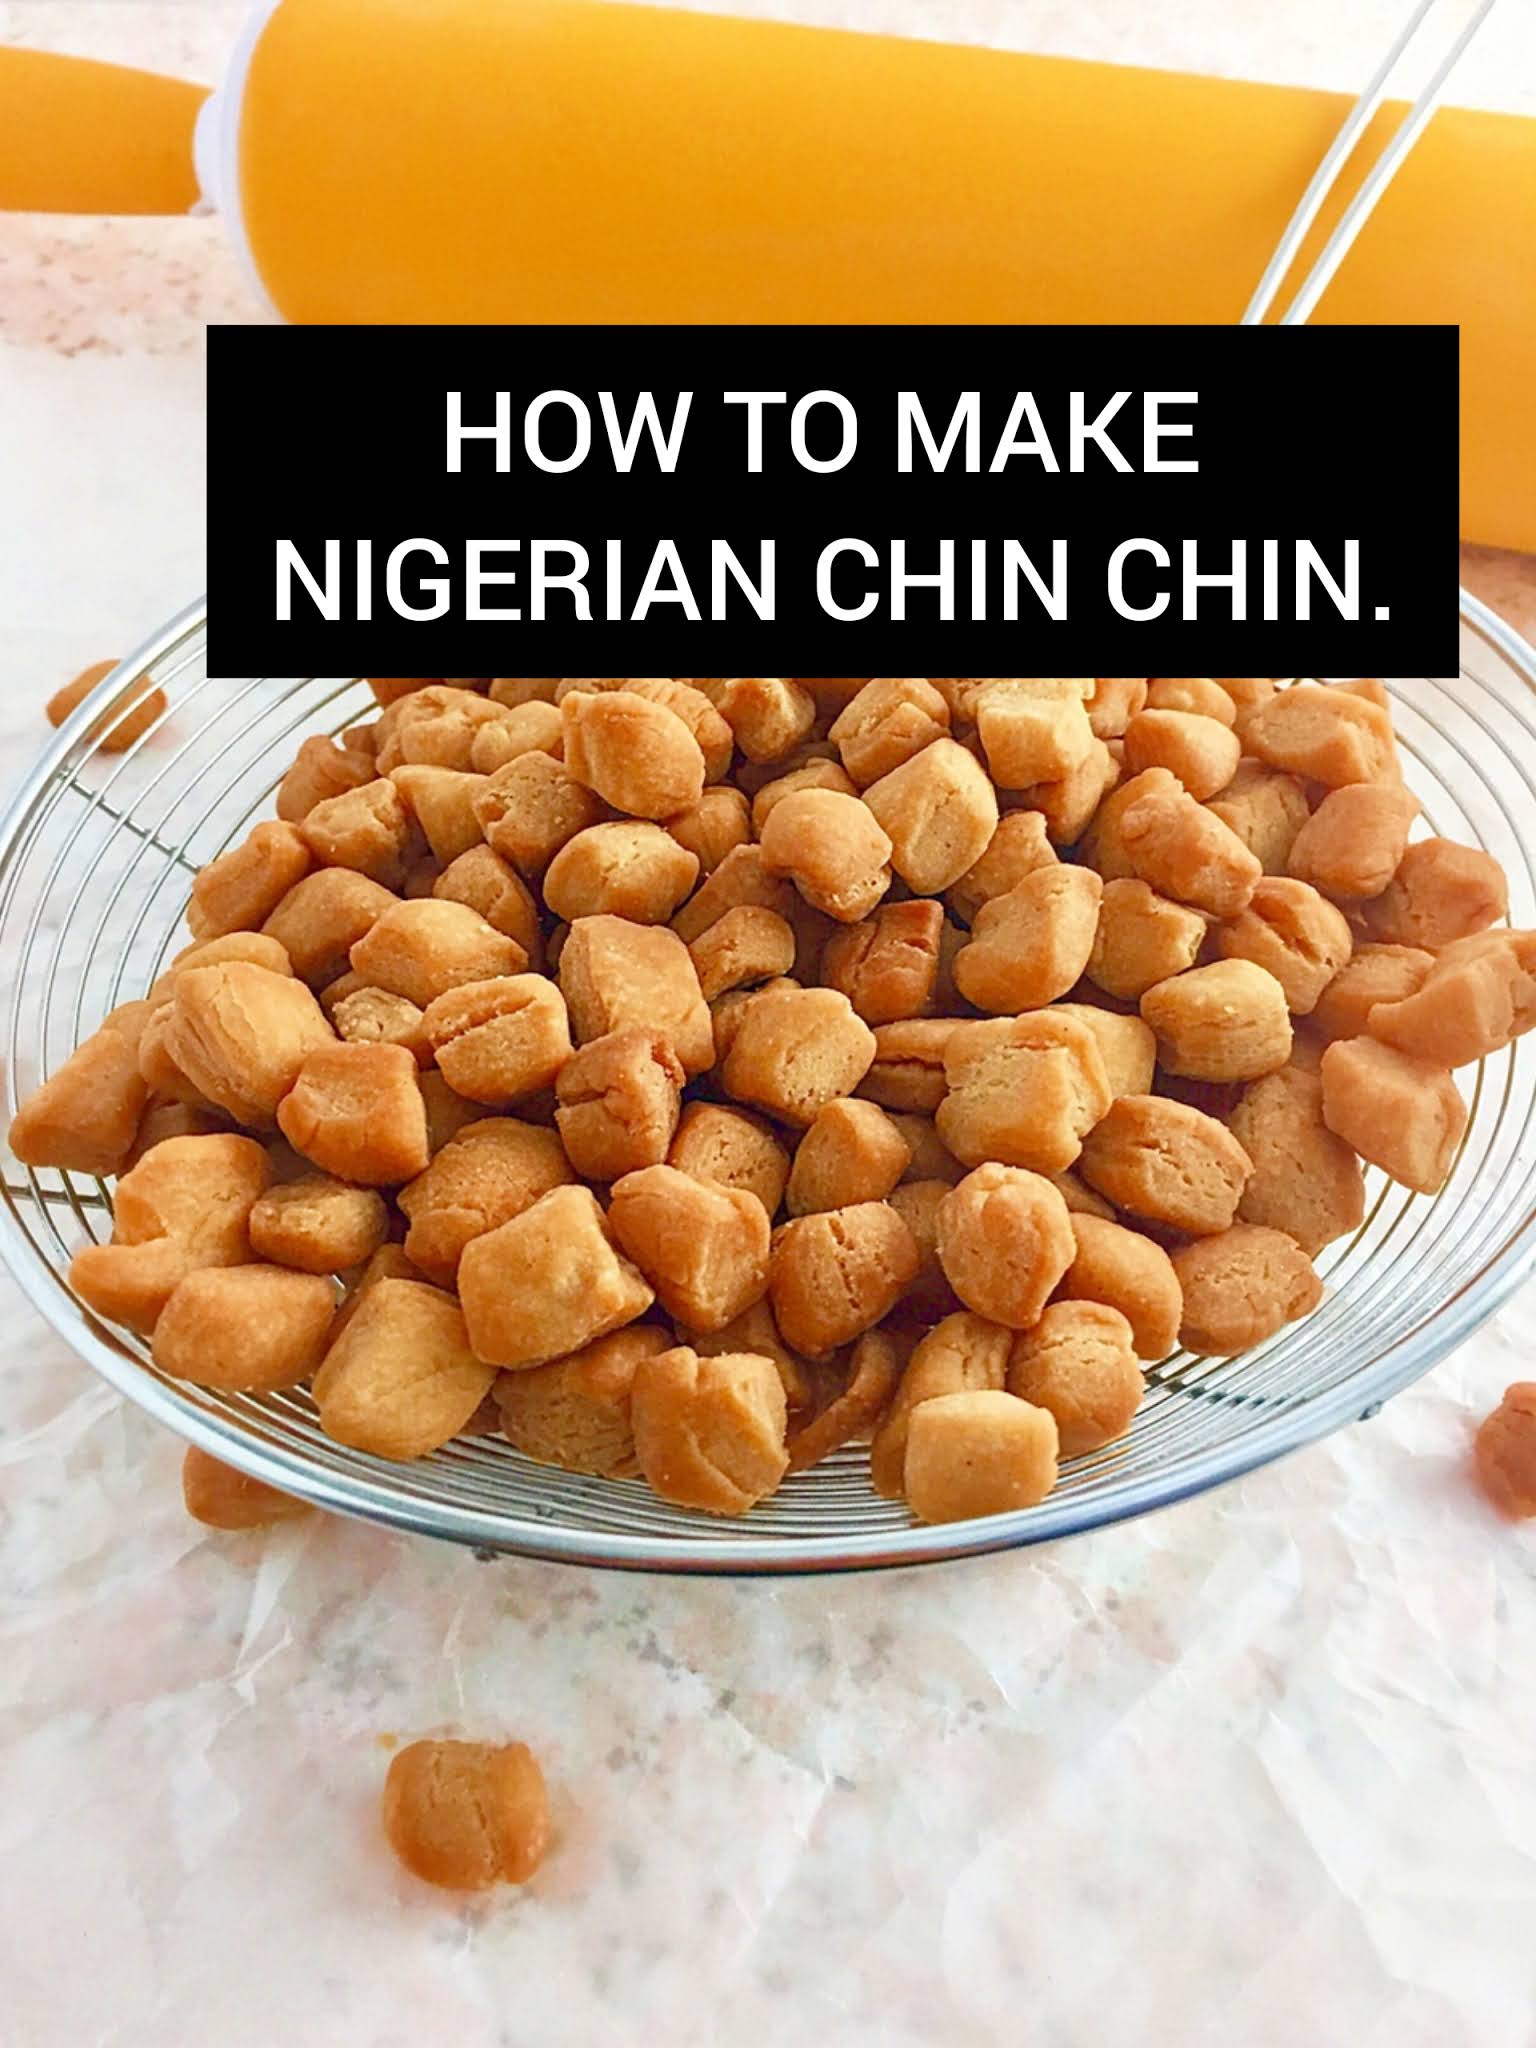 How to Make Nigerian Chin Chin.